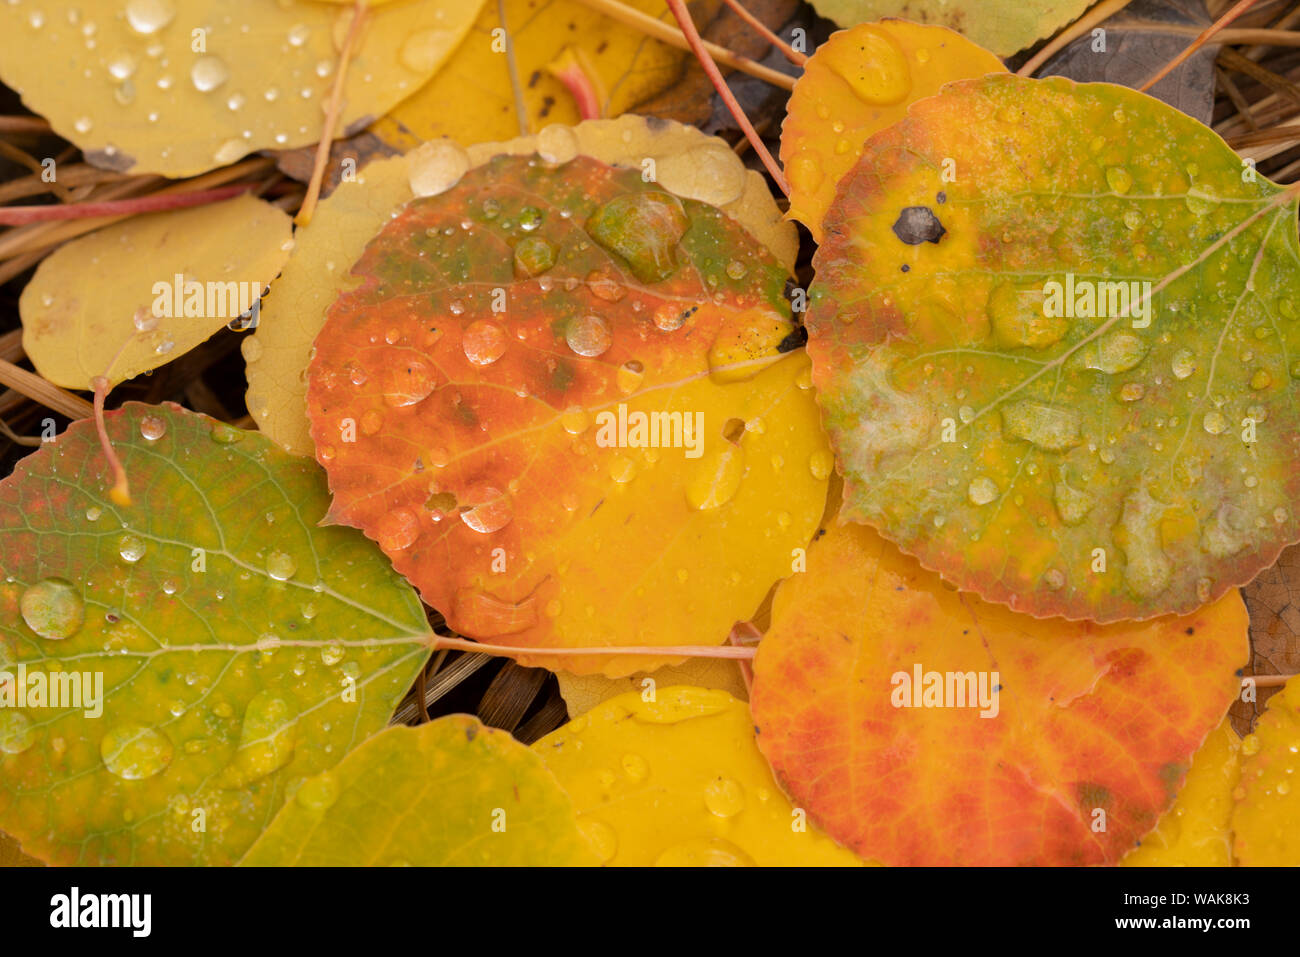 USA, Colorado, Gunnison National Forest. Gouttes de pluie sur les feuilles d'automne tombées tremble. En tant que crédit : Don Grall / Jaynes Gallery / DanitaDelimont.com Banque D'Images